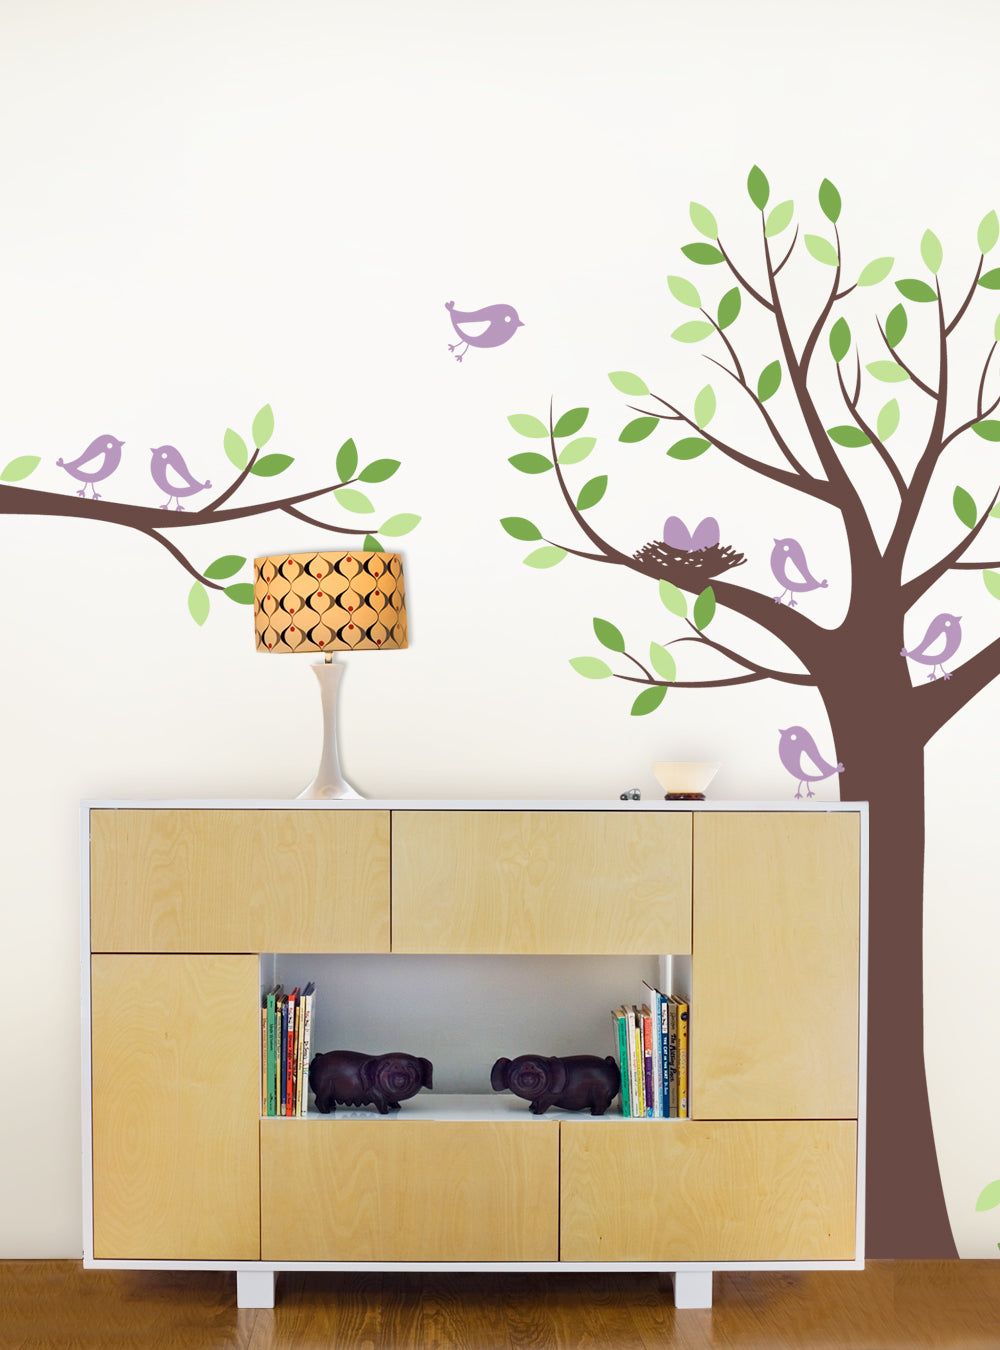 Sticker mural arbre avec famille d'oiseaux